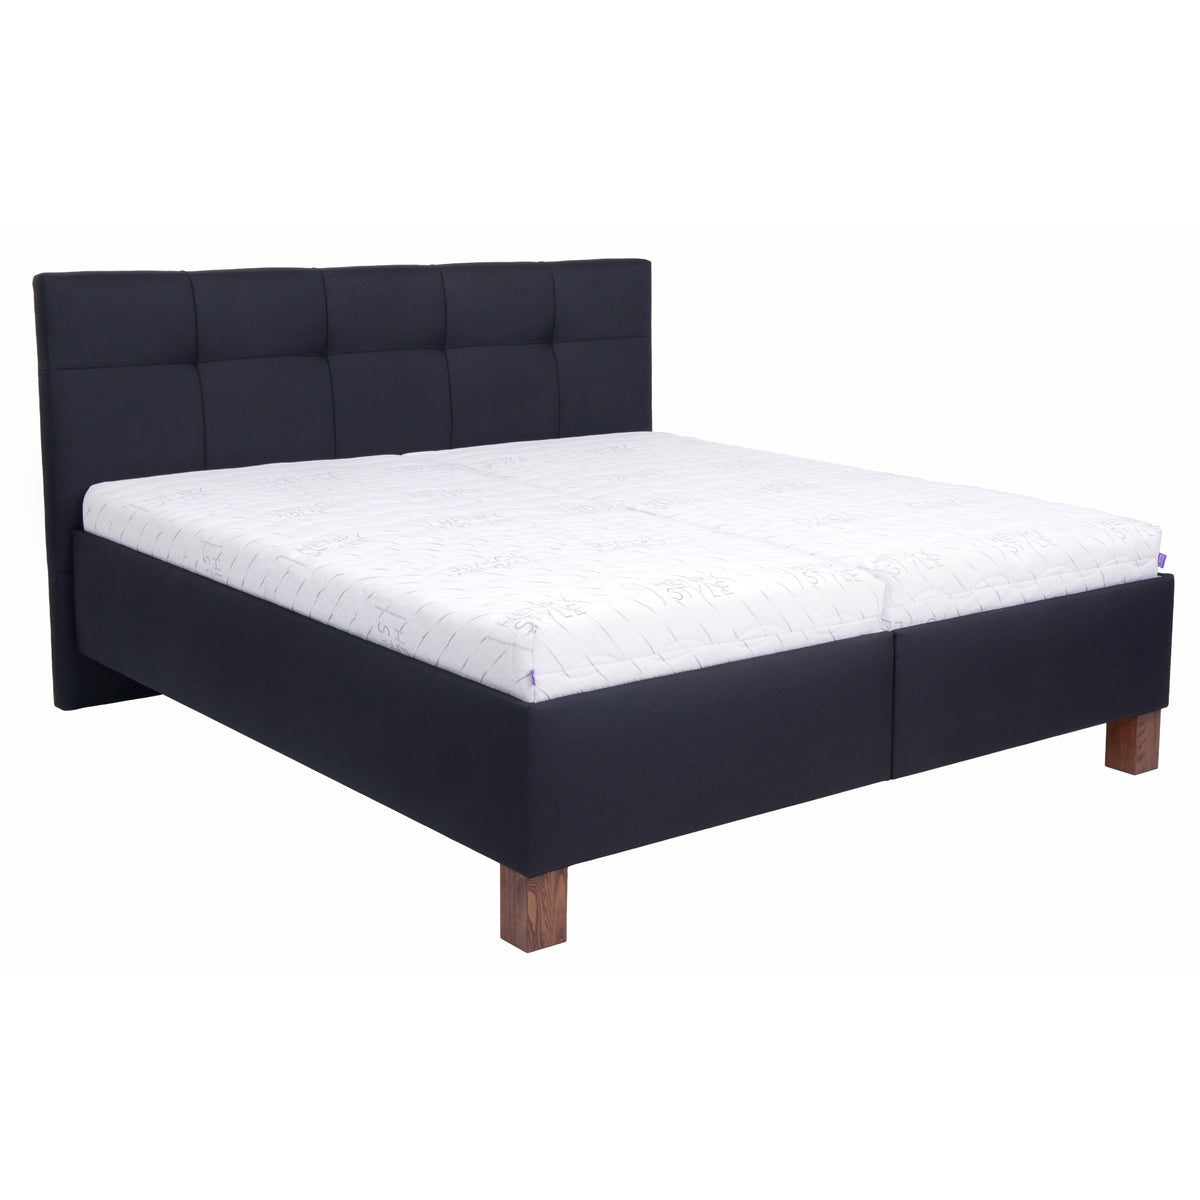 Čalouněná postel Mary 160x200, černá, včetně matrace